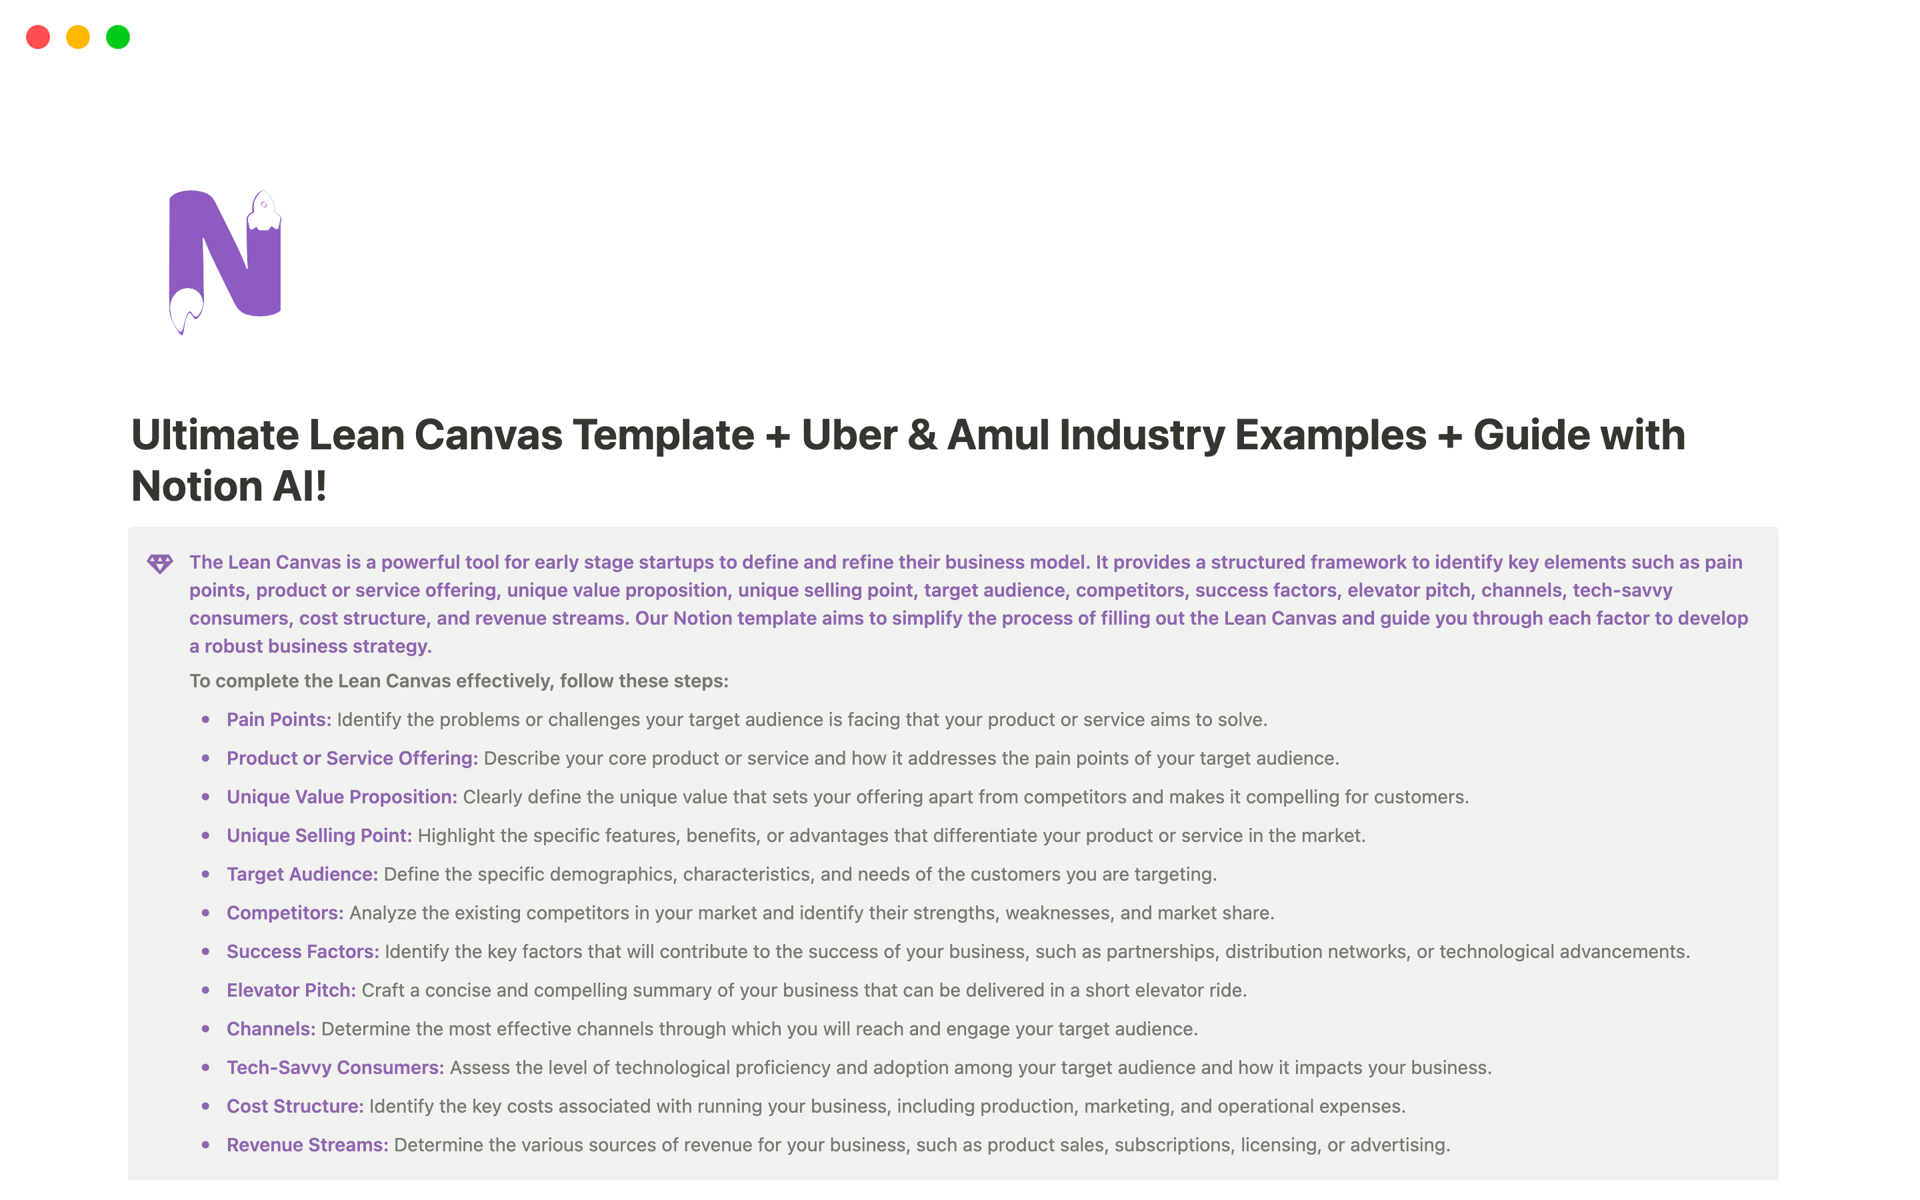 En förhandsgranskning av mallen för Ultimate Lean Canvas with examples of Uber & Amul